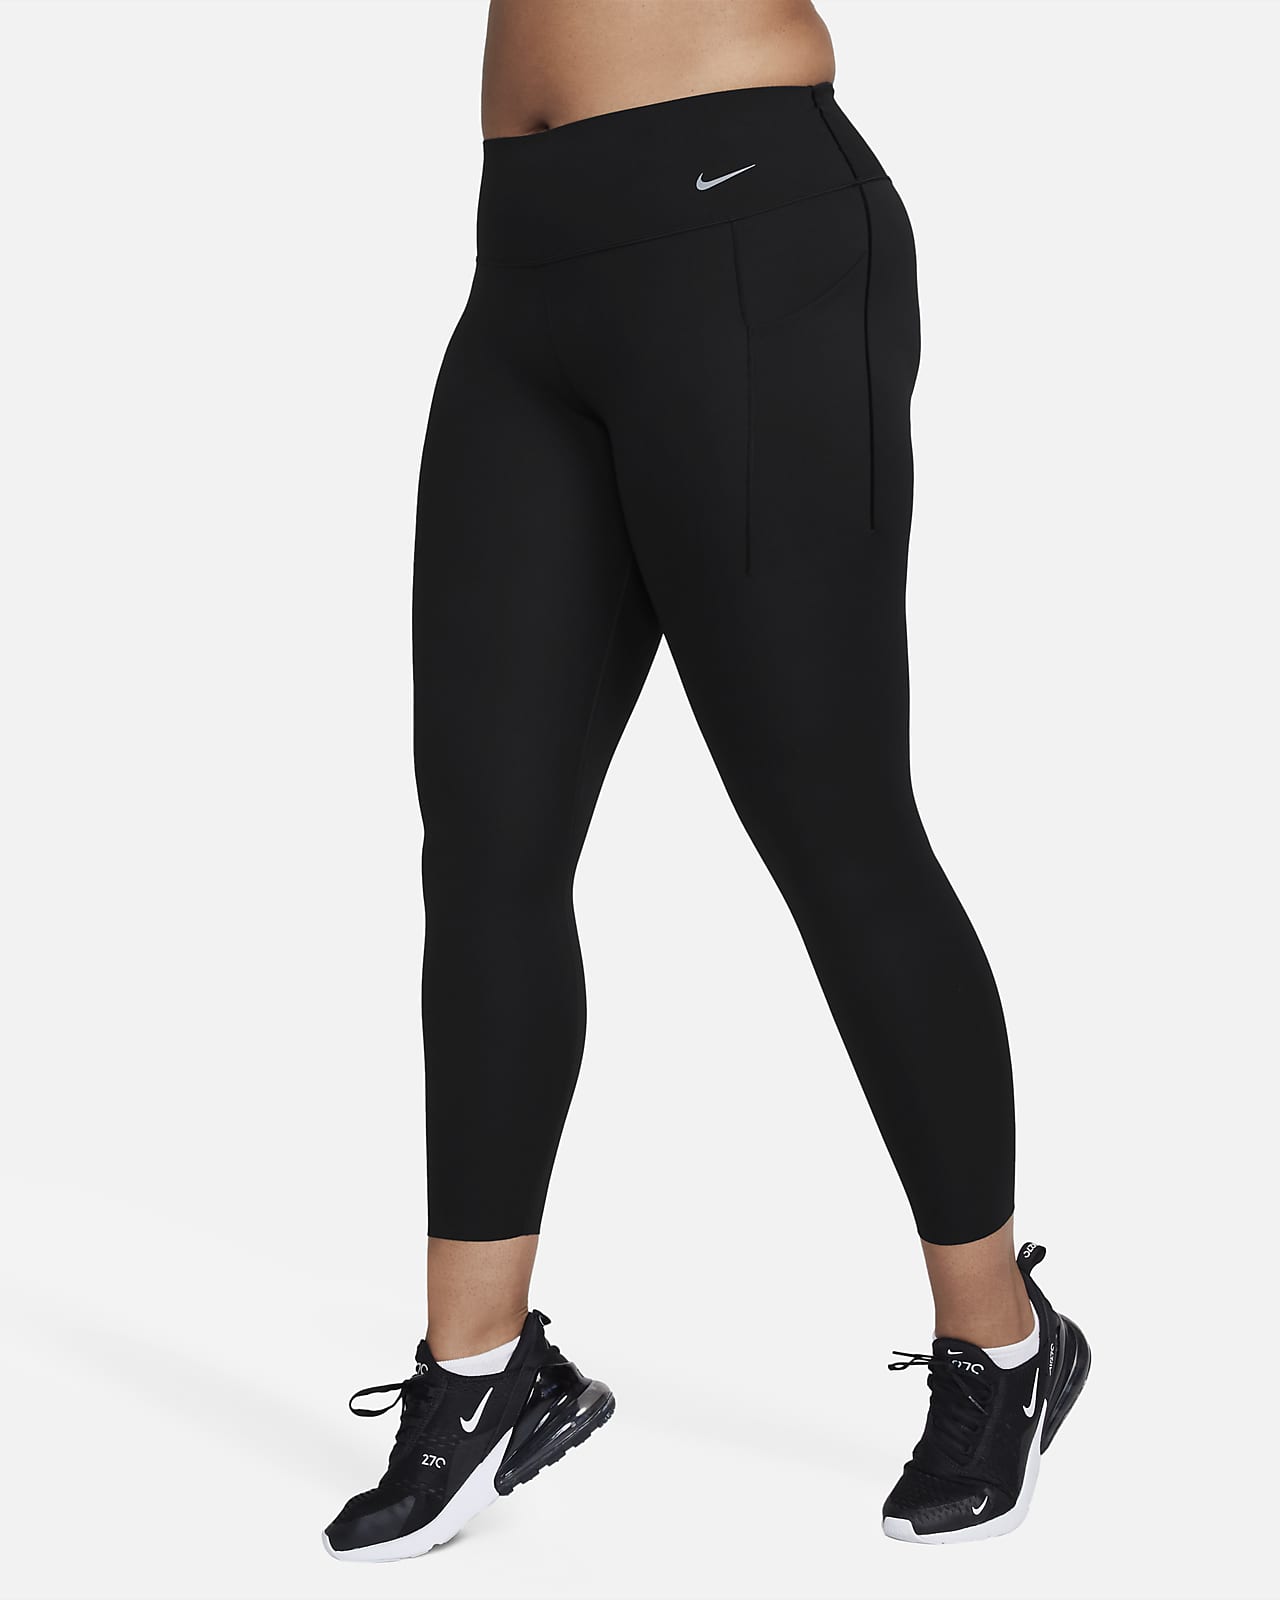 Nike Dri-Fit Legend Women’s Leggings Size L Large Black Skinny Tight Gym  Yoga